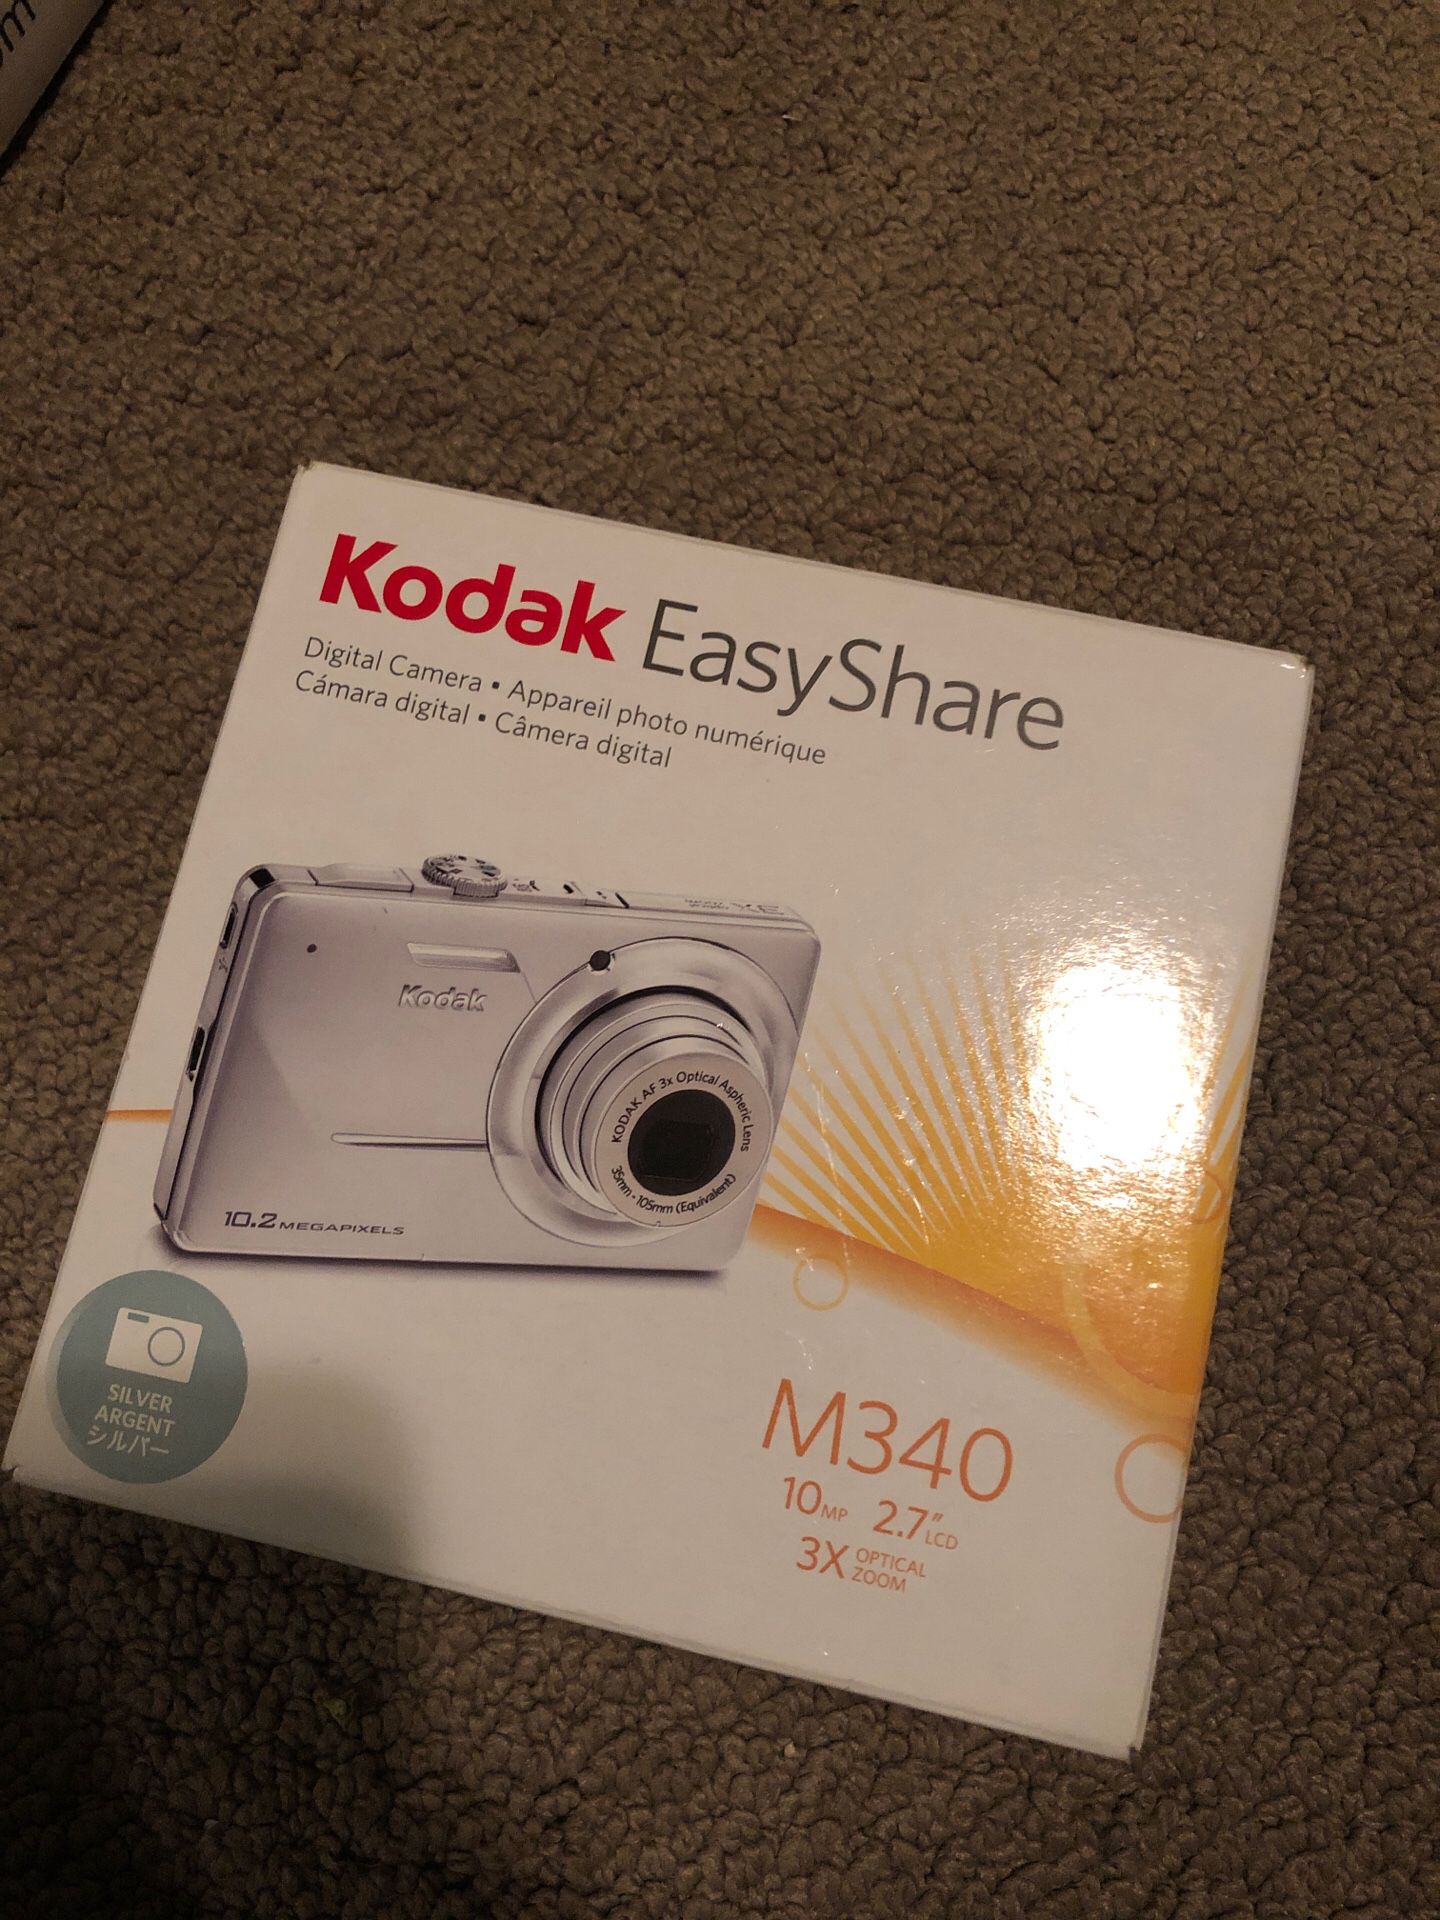 Kodak easy share digital camera